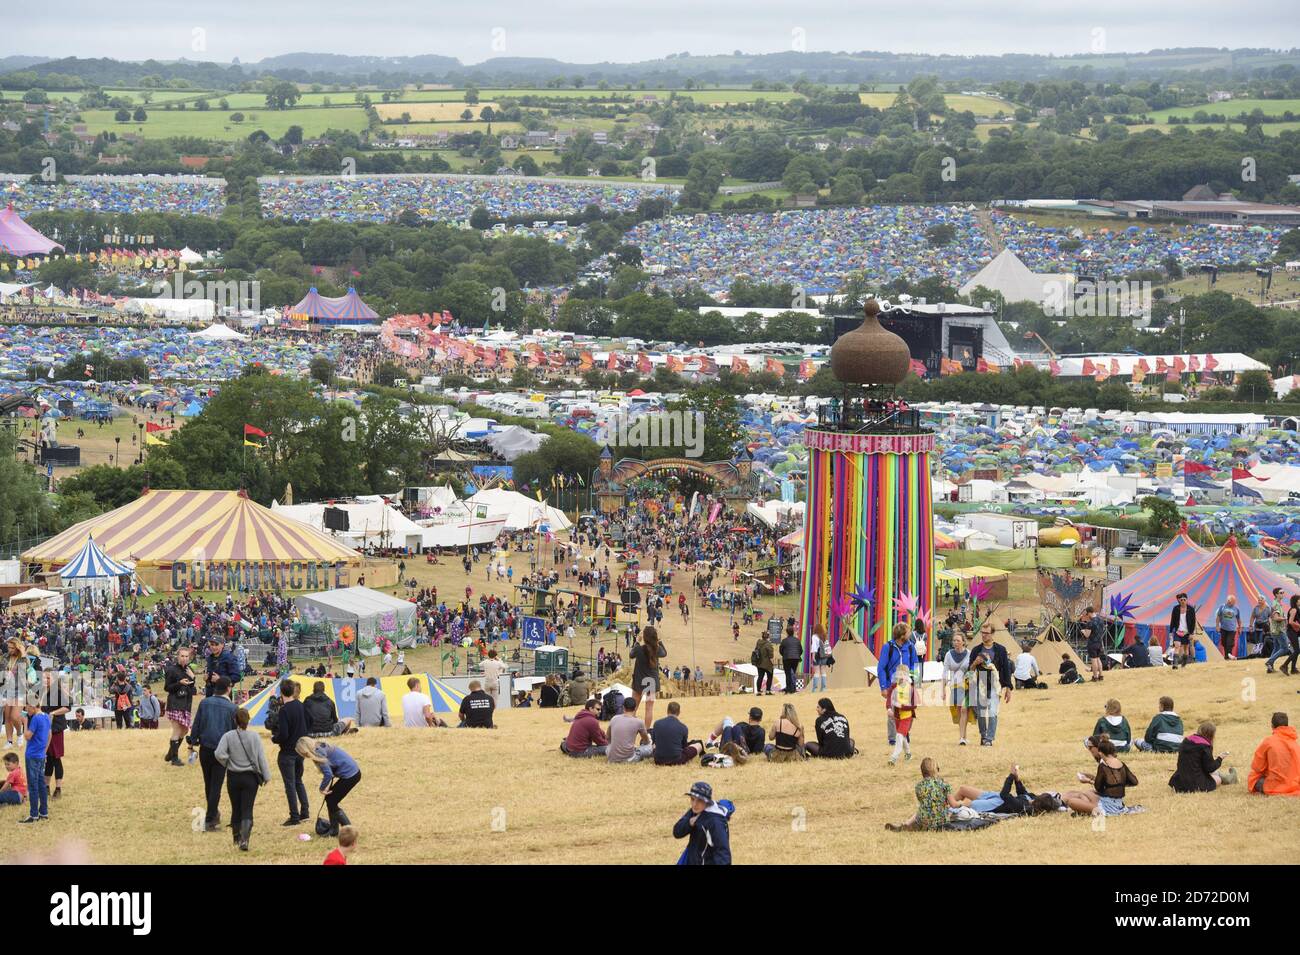 Atmosfera durante il festival di Glastonbury presso la Worthy Farm di Pilton, Somerset. Data immagine: Domenica 25 giugno 2017. Il credito fotografico dovrebbe essere: Matt Crossick/ EMPICS Entertainment. Foto Stock